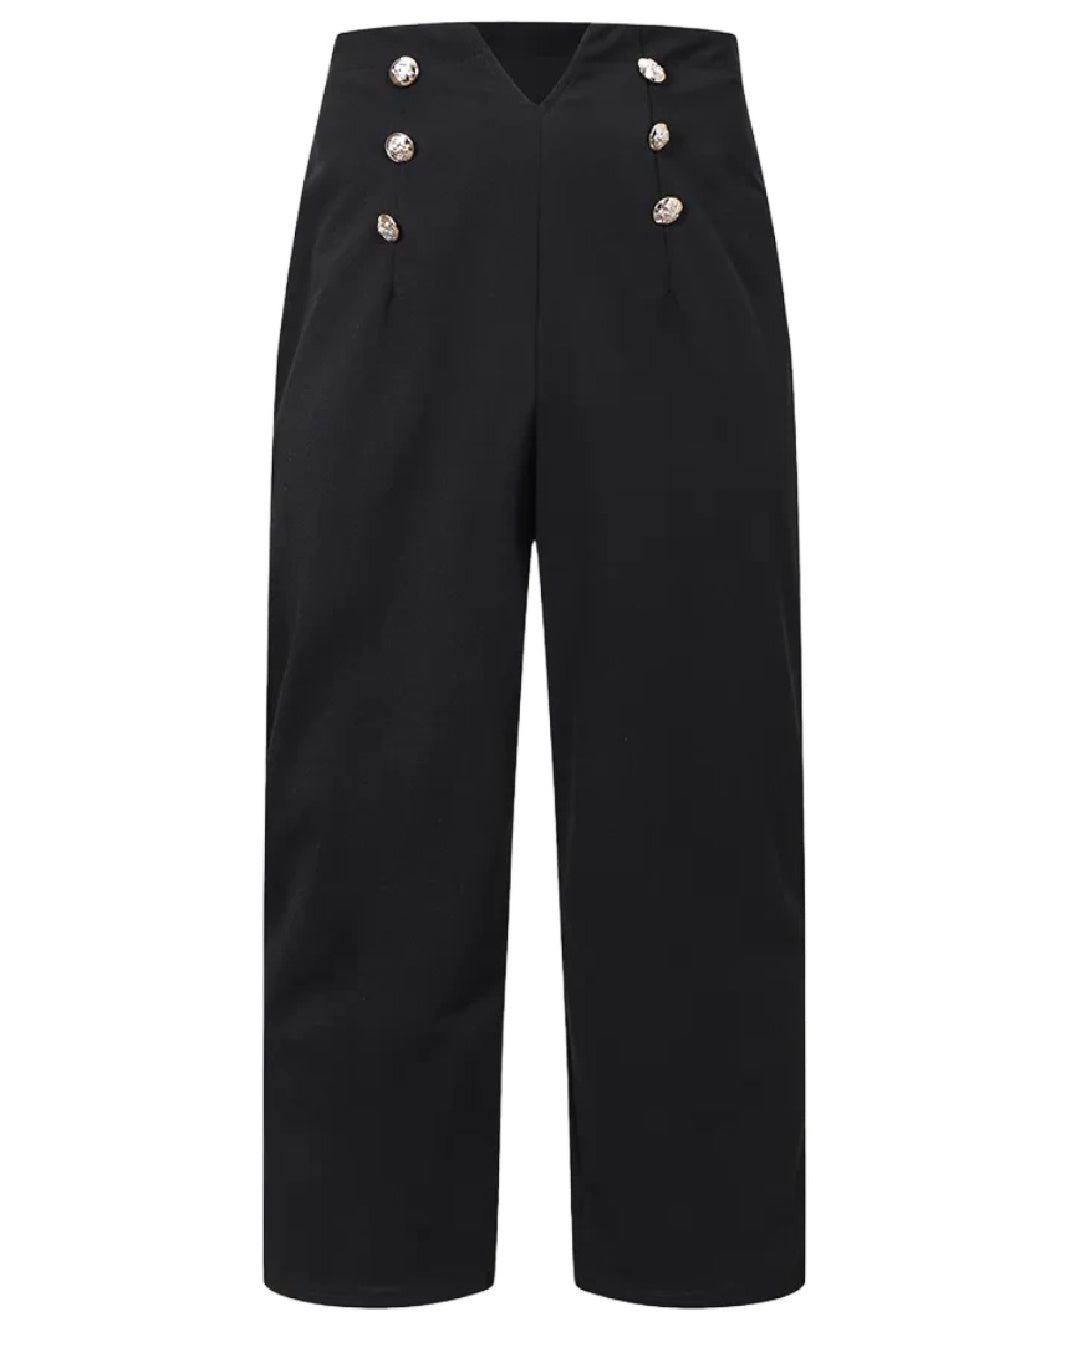 Sailor- the Black High Waist Sailor Pants Plus Size – Dorothea's